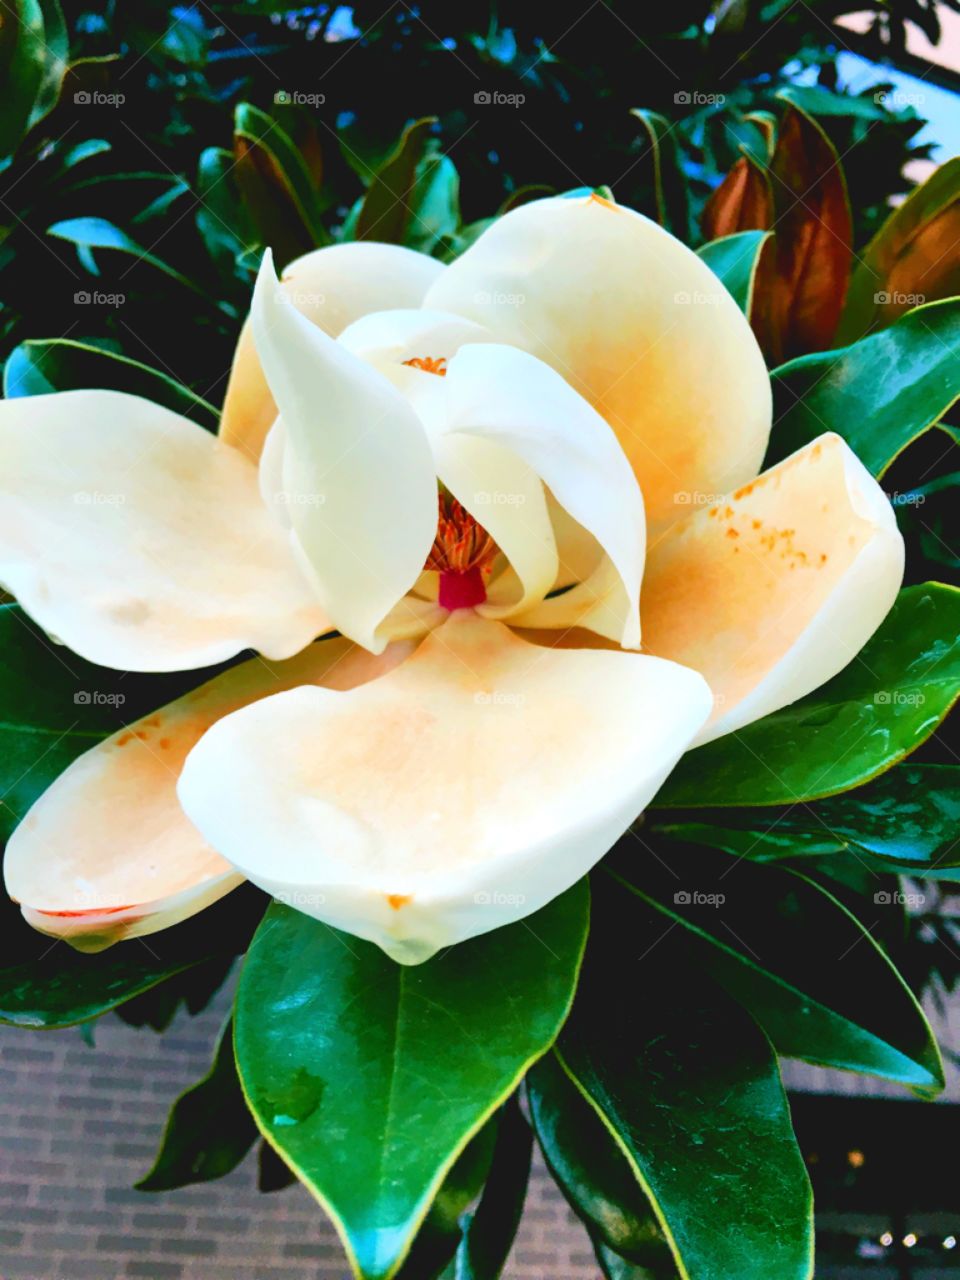 Magnolia flower 